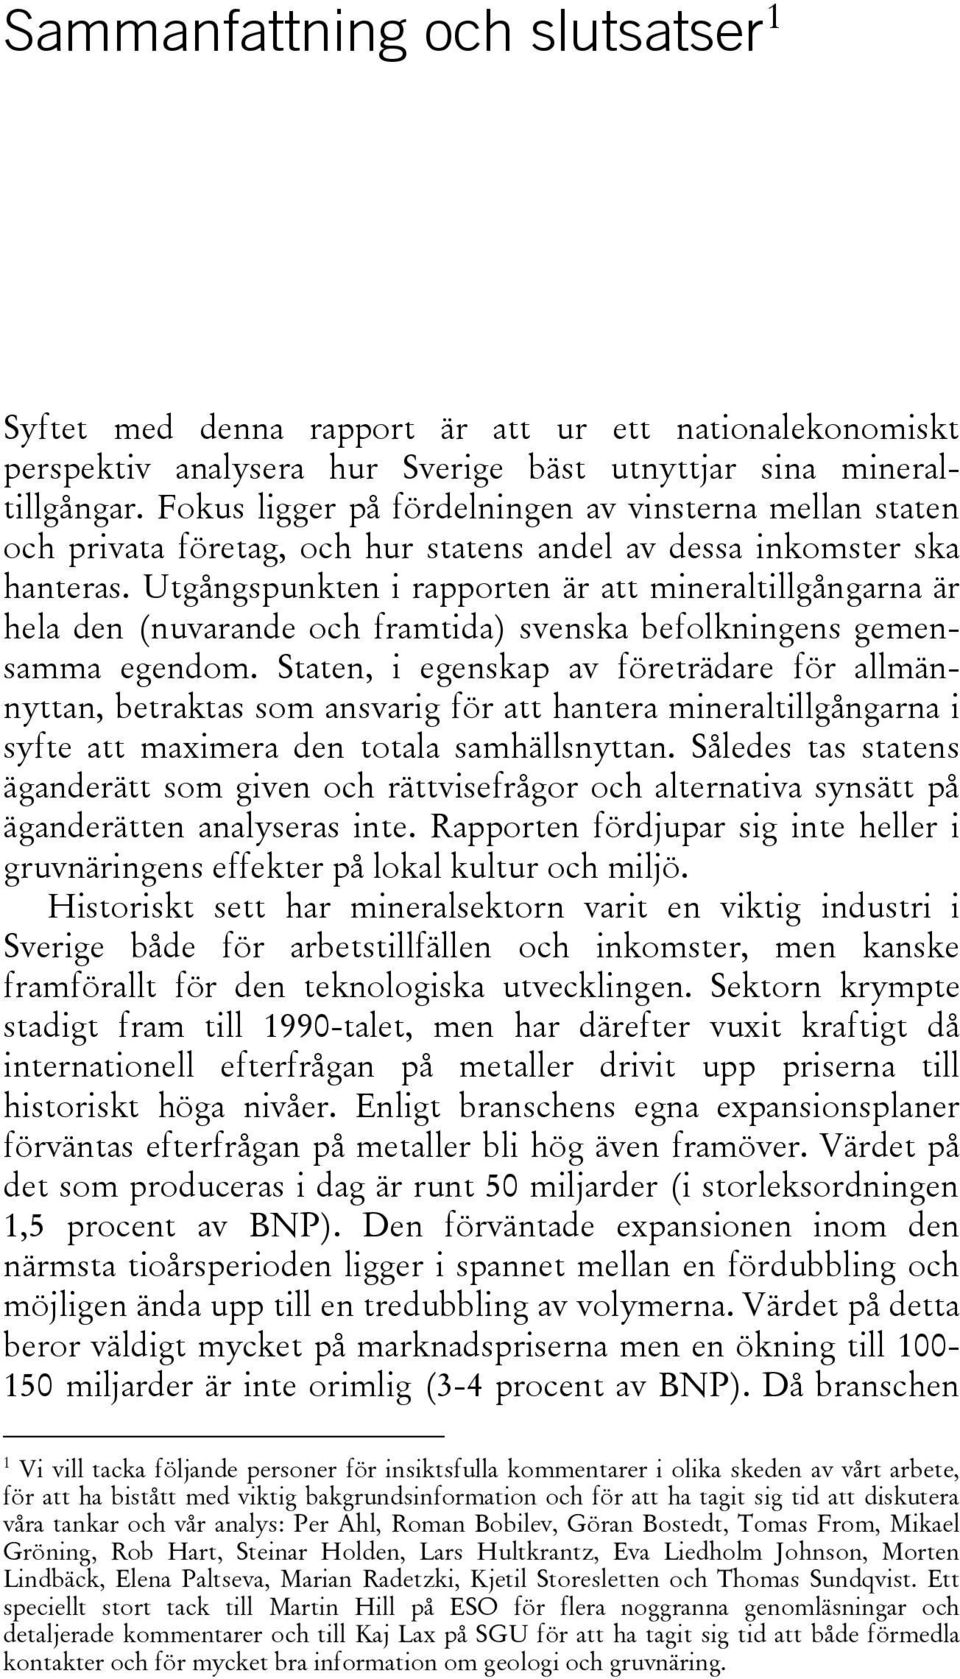 Utgångspunkten i rapporten är att mineraltillgångarna är hela den (nuvarande och framtida) svenska befolkningens gemensamma egendom.